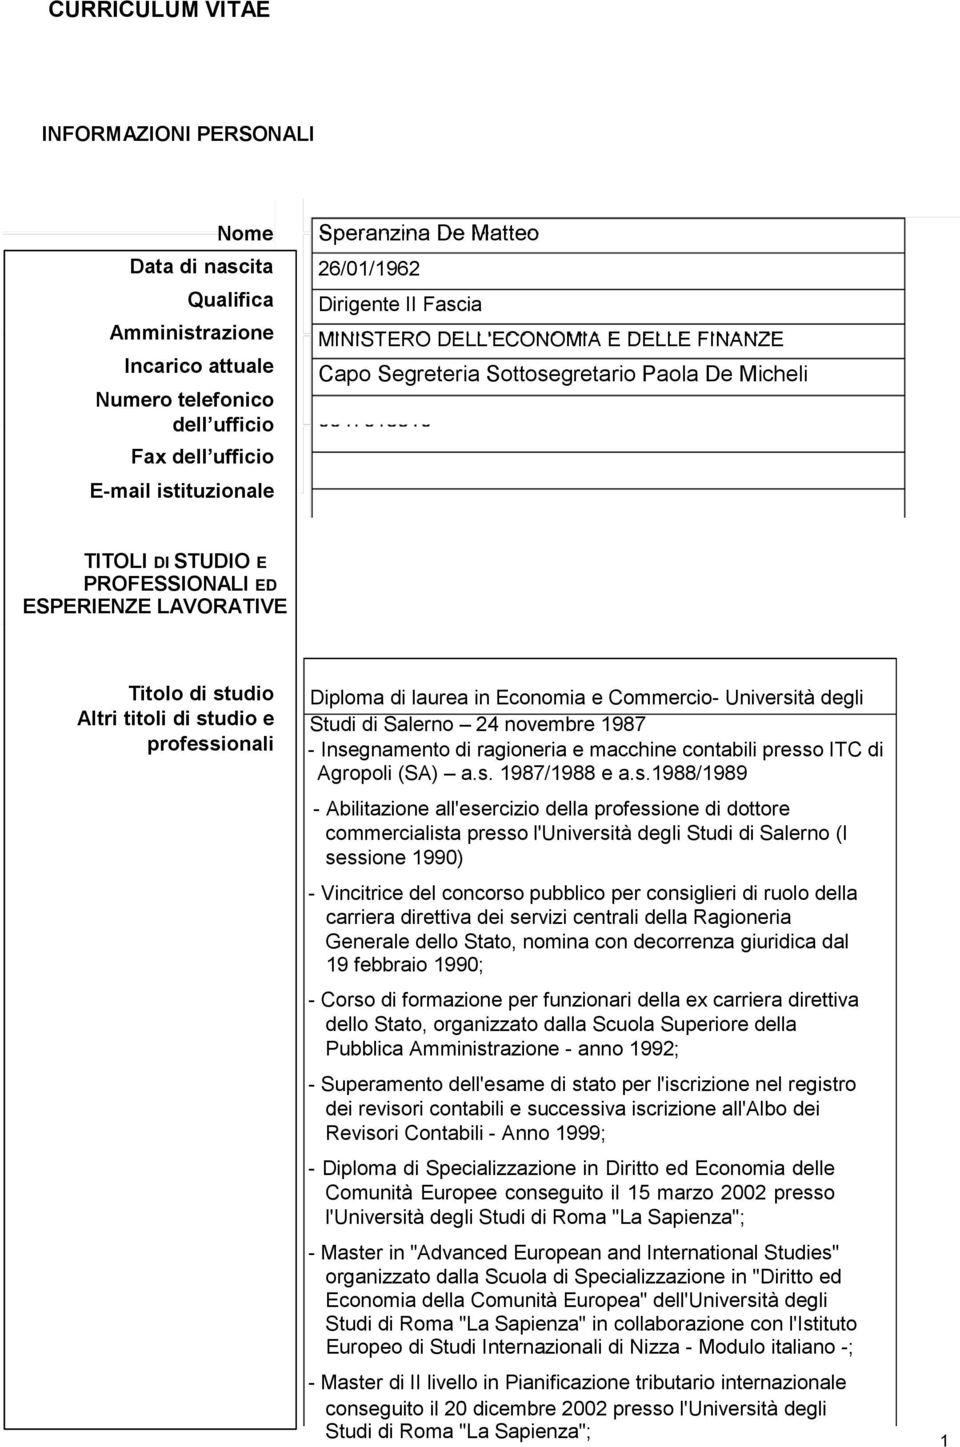 professionali Diploma di laurea in Economia e Commercio- Università degli Studi di Salerno 24 novembre 1987 - Insegnamento di ragioneria e macchine contabili presso ITC di Agropoli (SA) a.s. 1987/1988 e a.